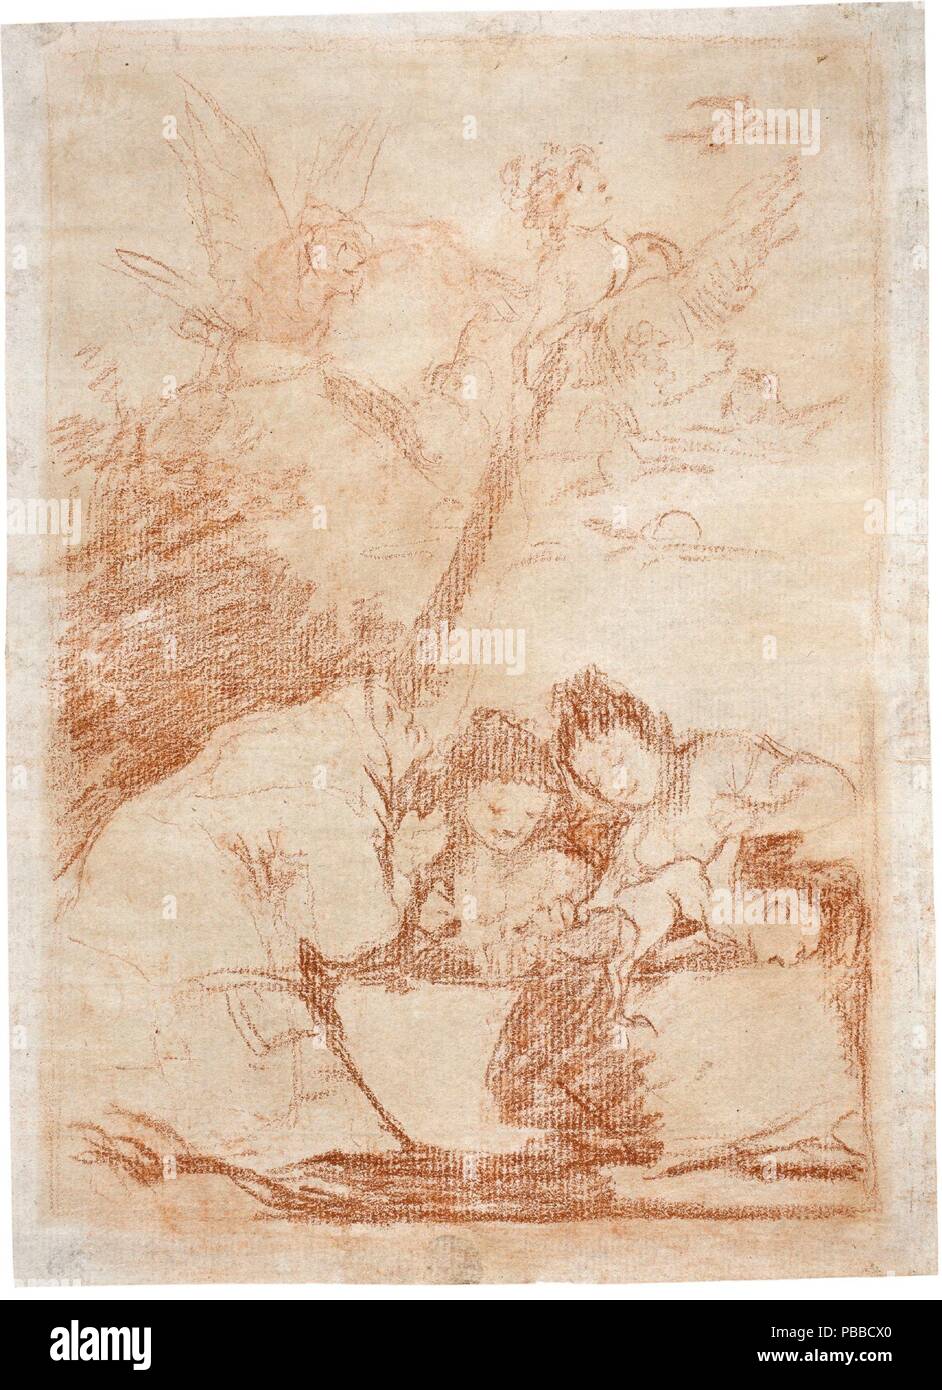 Francisco de Goya y Lucientes/' Alle werden fallen". 1797. Rote Kreide auf Elfenbein Bütten. Museum: Museo del Prado, Madrid, España. Stockfoto